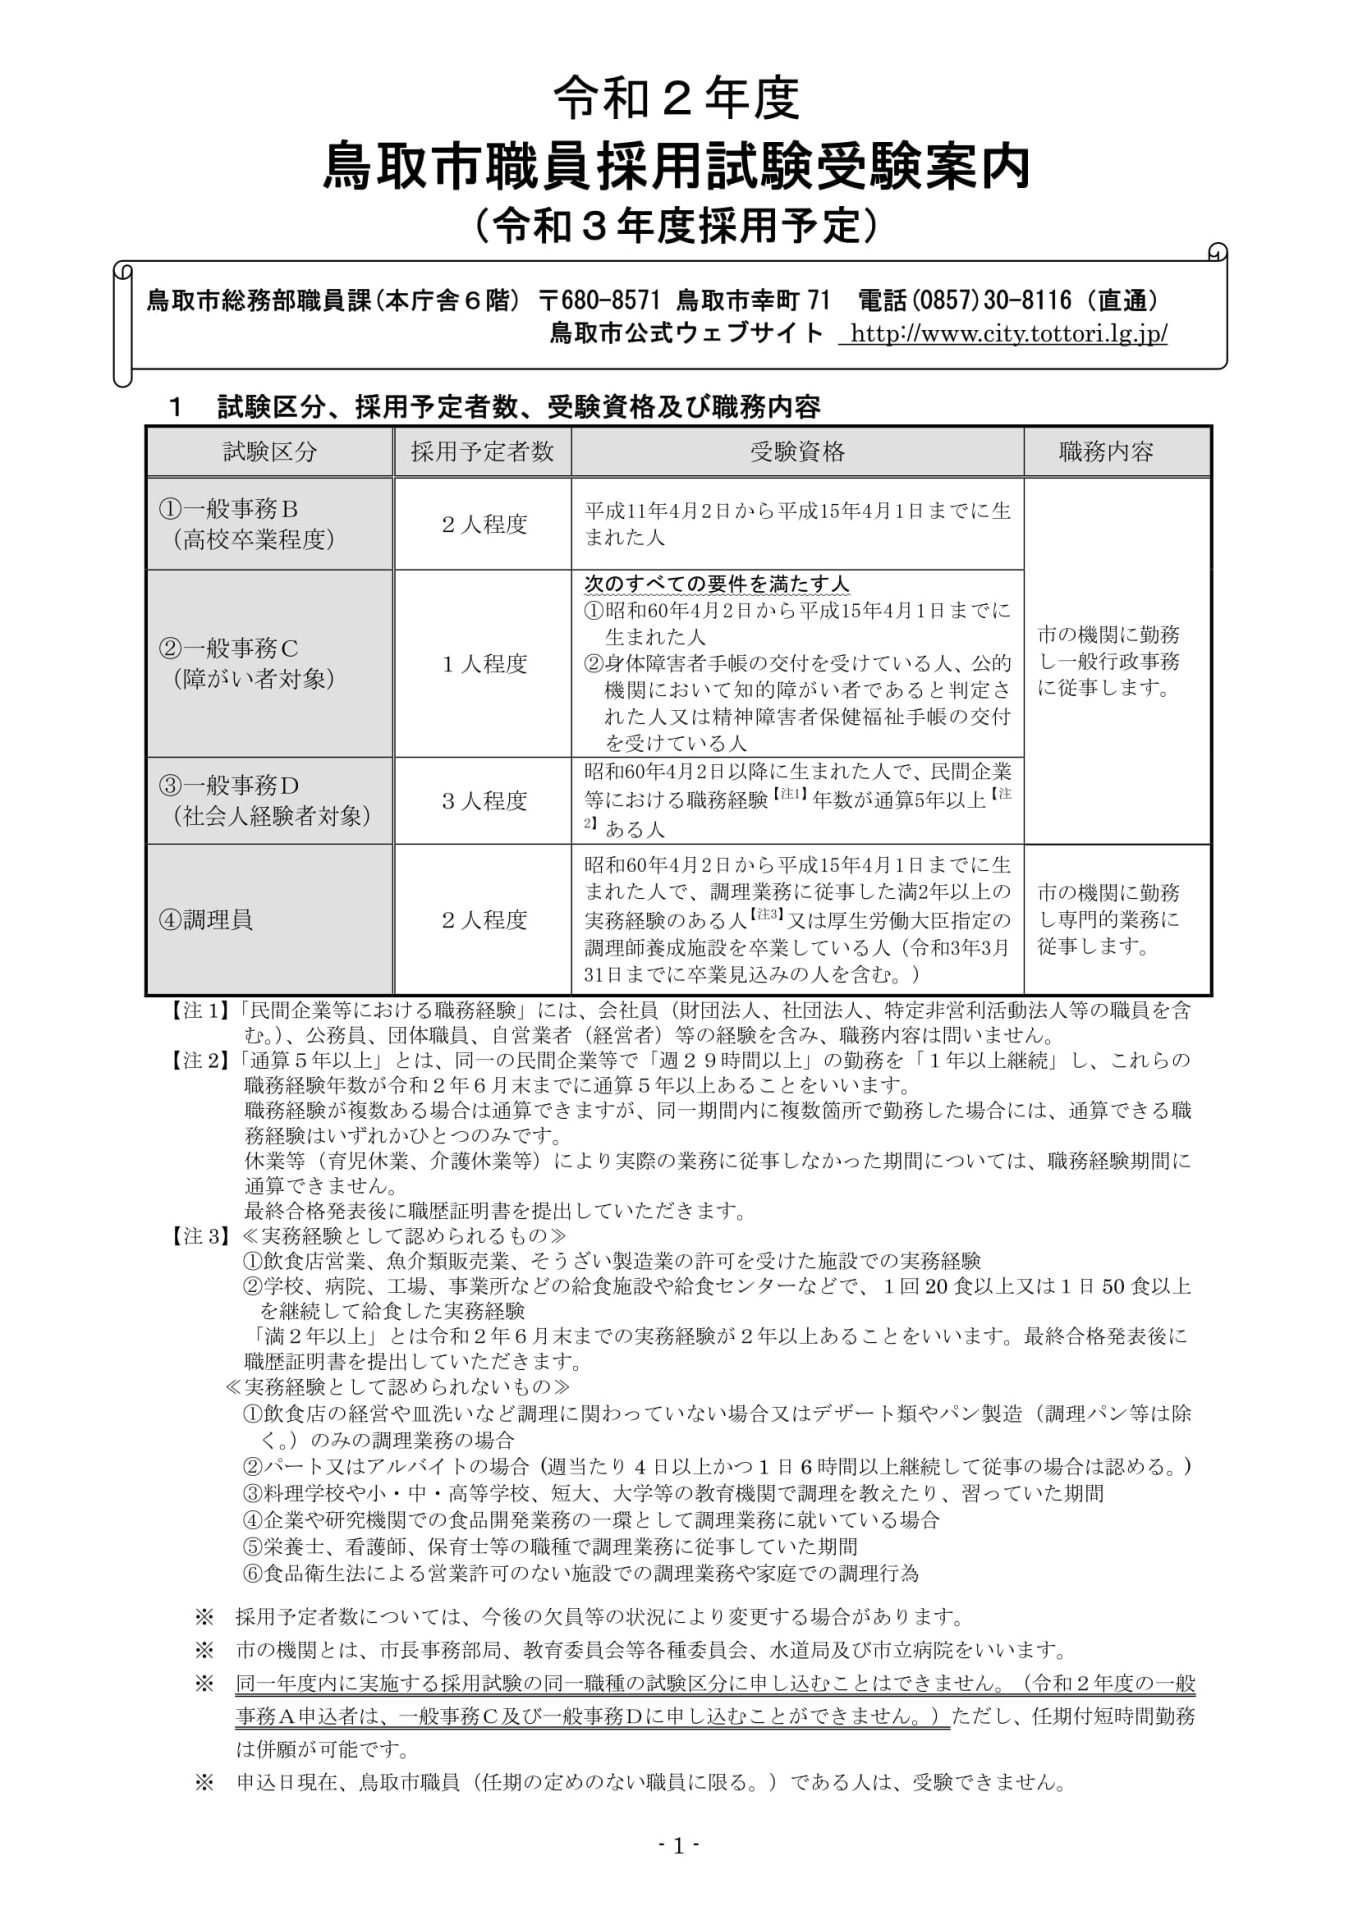 【令和3年度採用予定】鳥取市職員採用試験受験案内 | 地域のトピックス